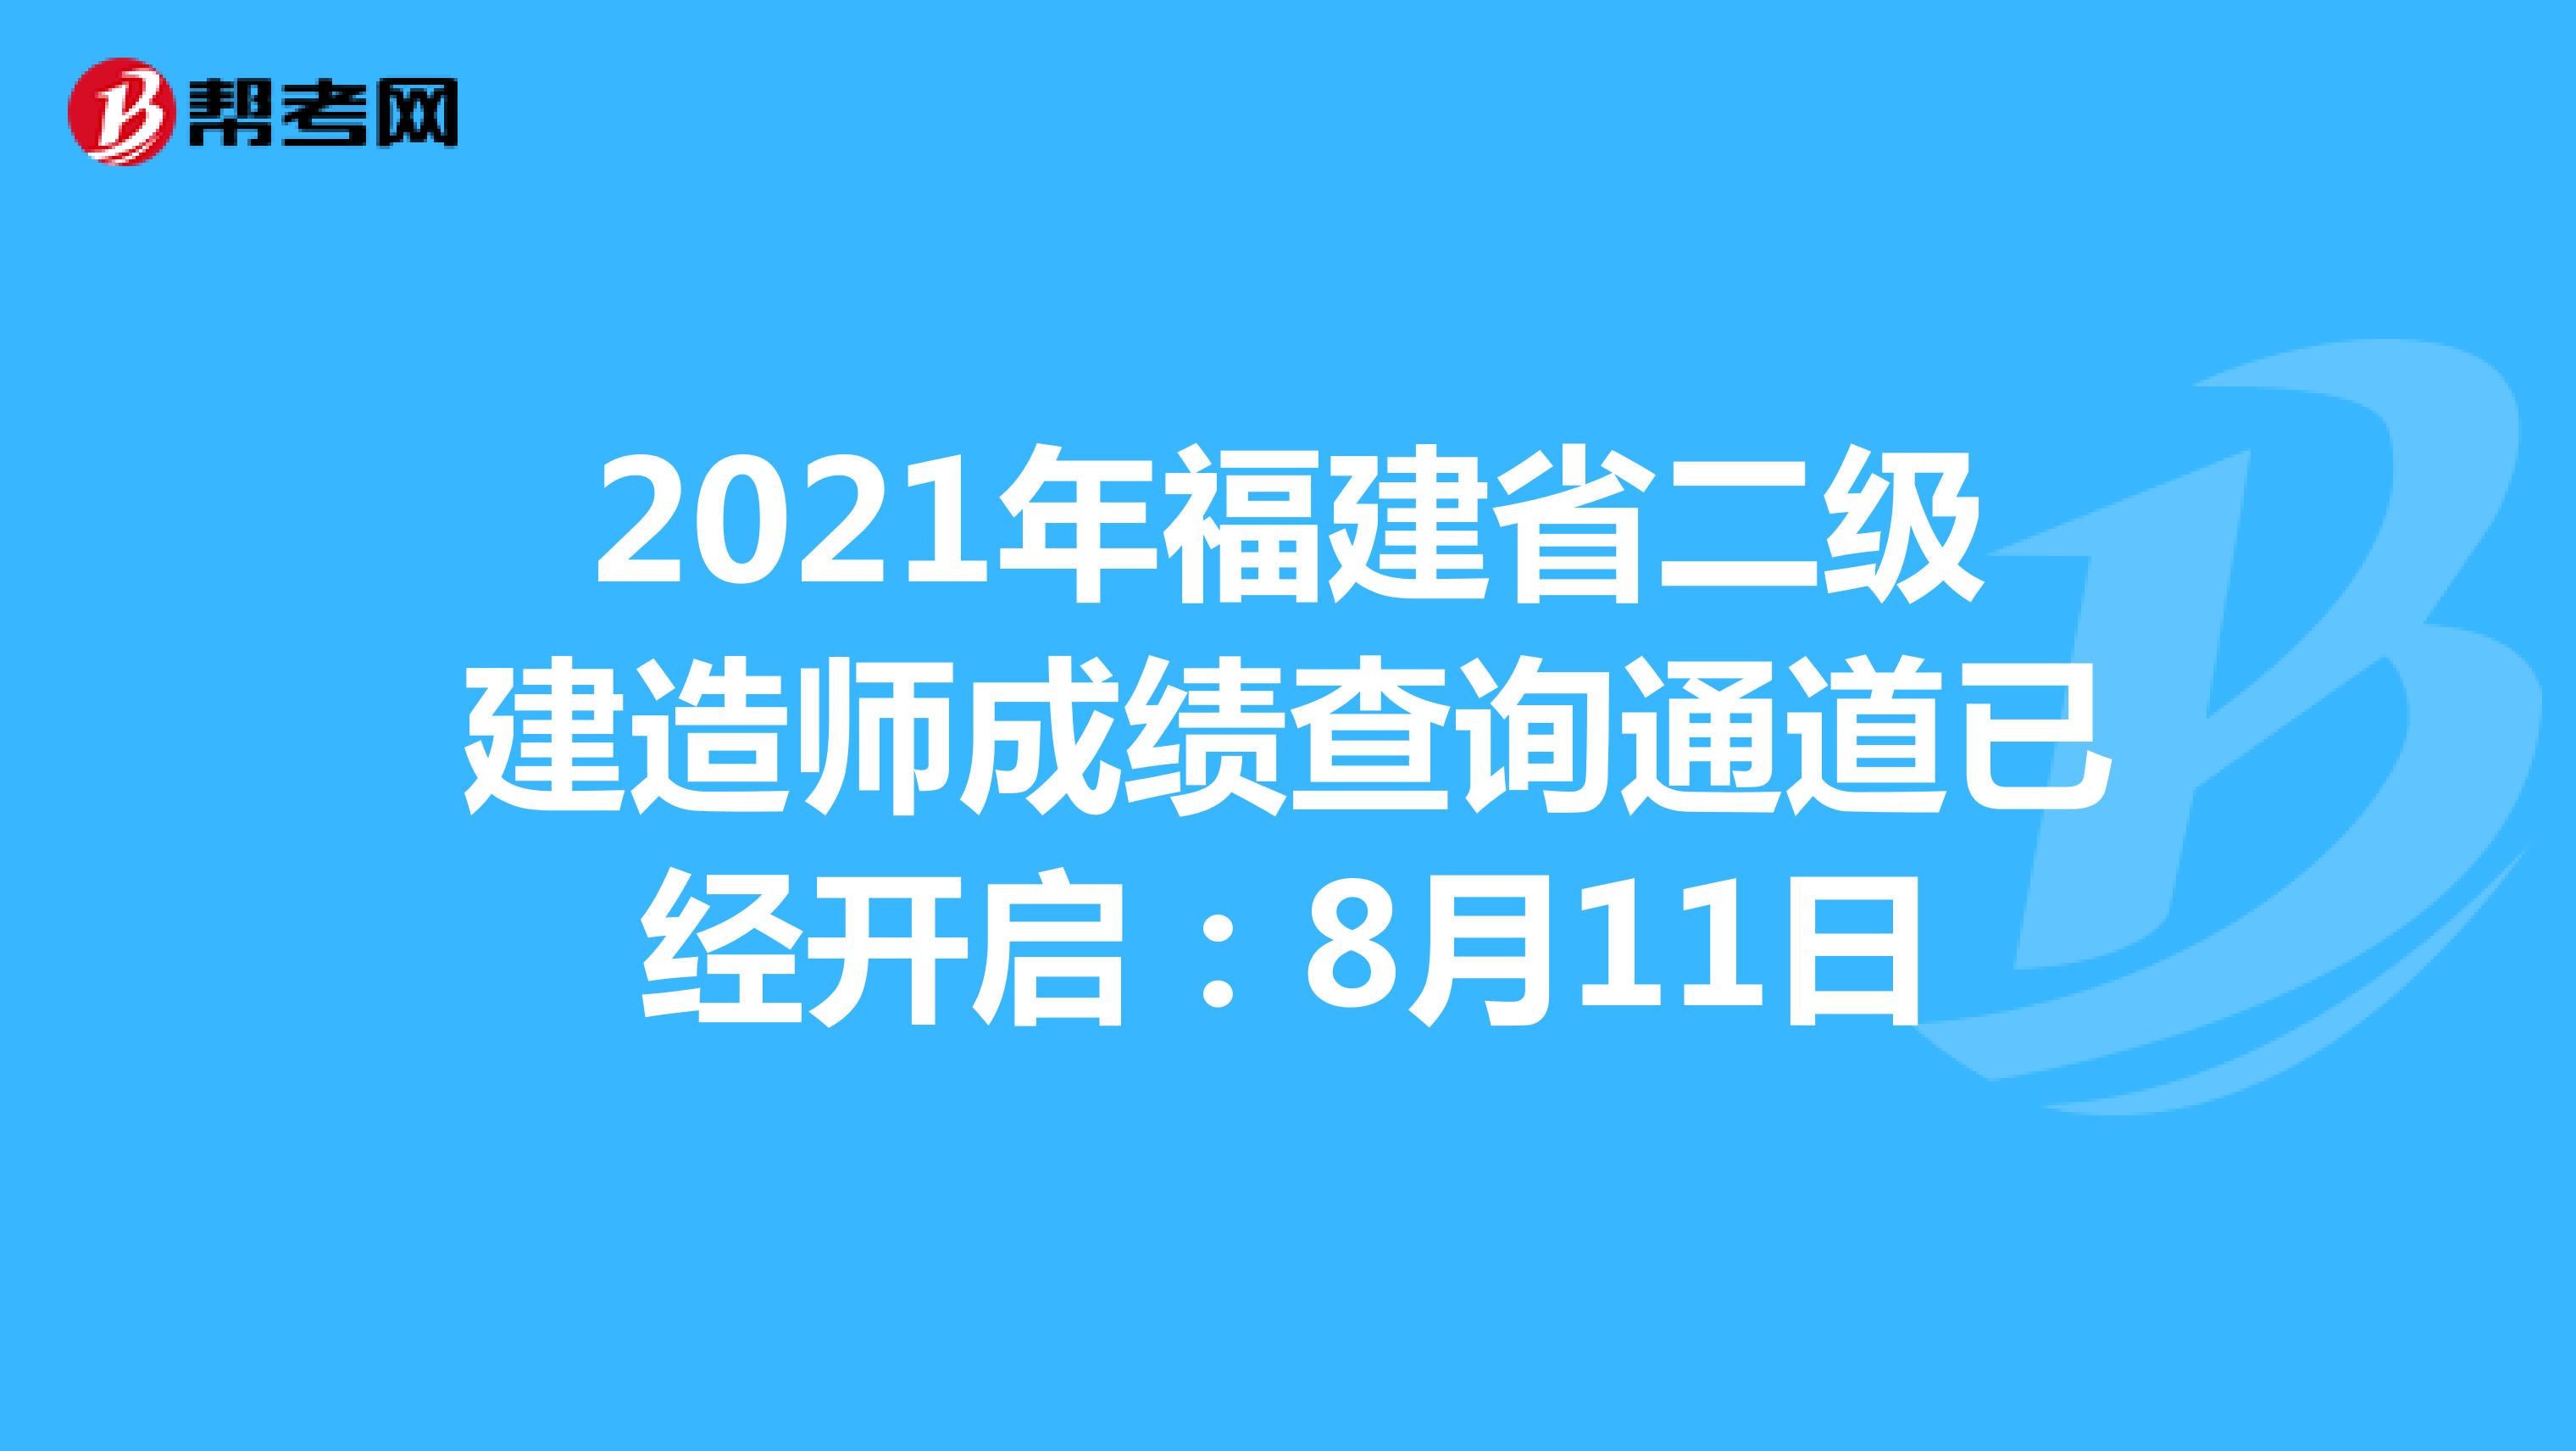 2021年福建省二级建造师成绩查询通道已经开启：8月11日